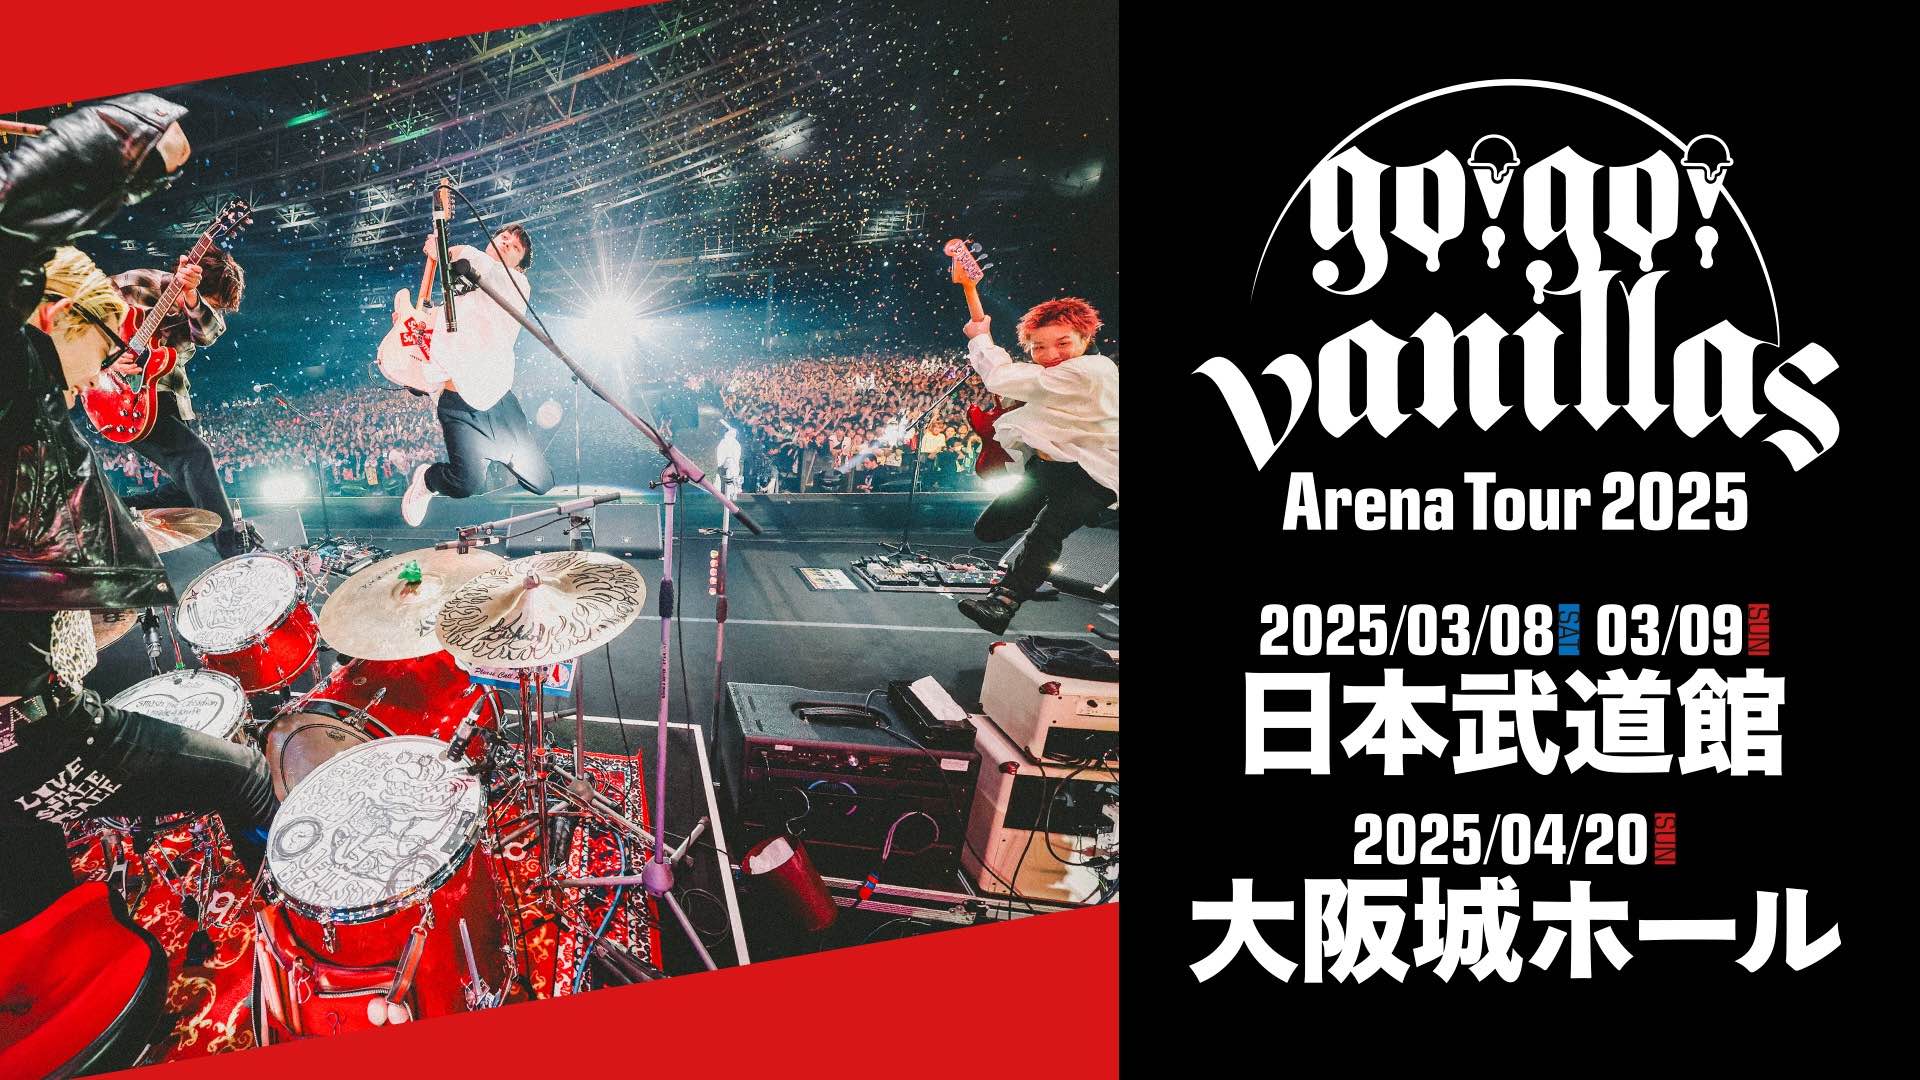 日本武道館 <span class="live-title"> go!go!vanillas Arena Tour 2025 </span>